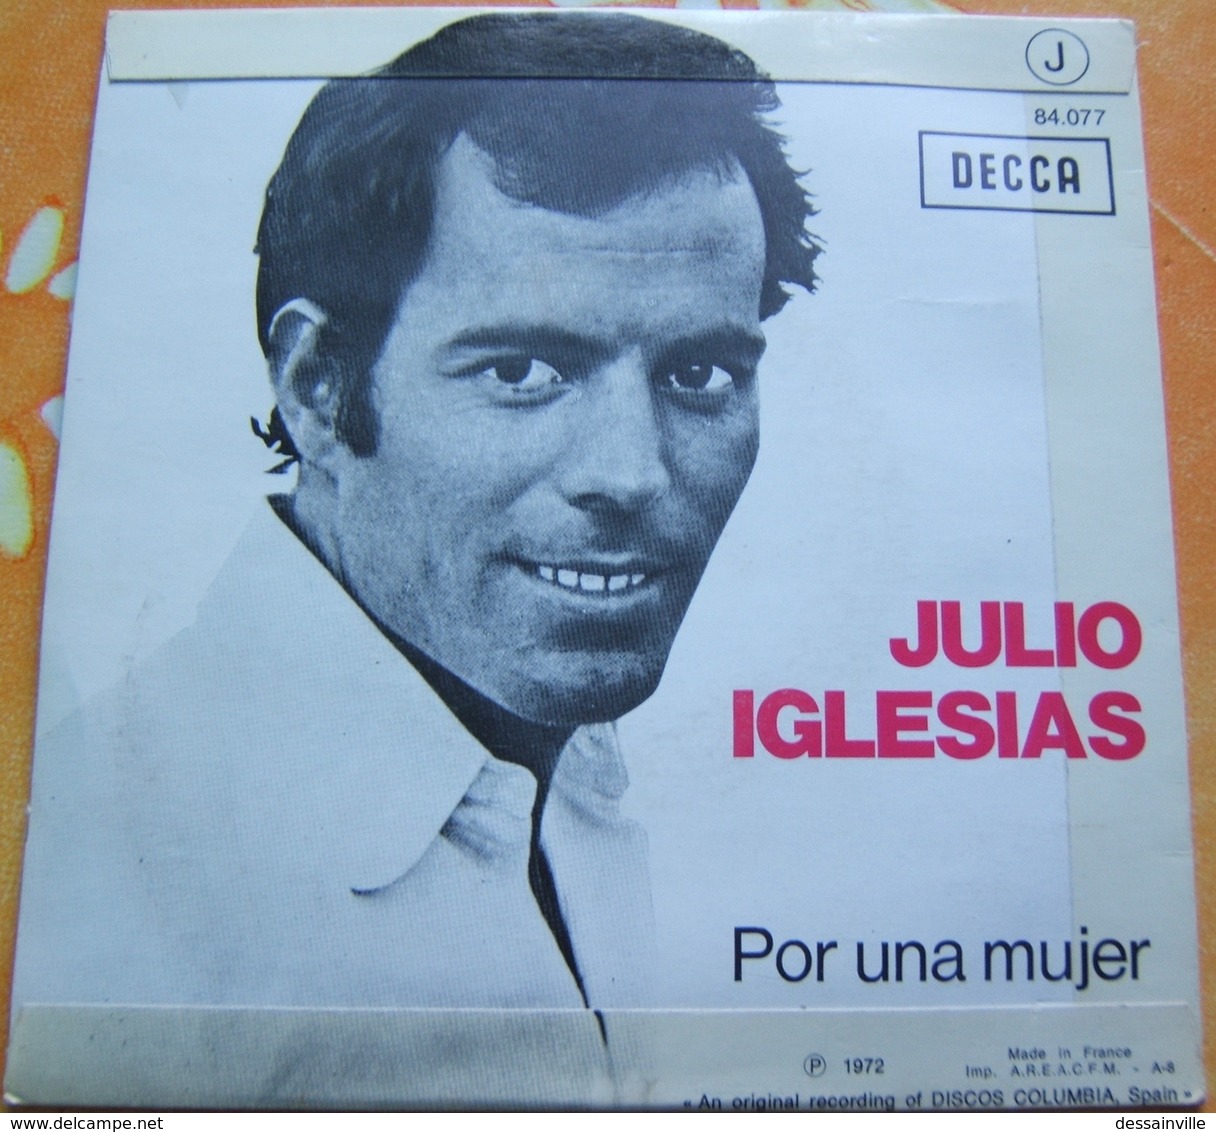 45 Tours JULIO IGLESIAS - UN CANTO A GALICIA / POR UNA MUJER - DECCA 84.077 - Otros - Canción Española